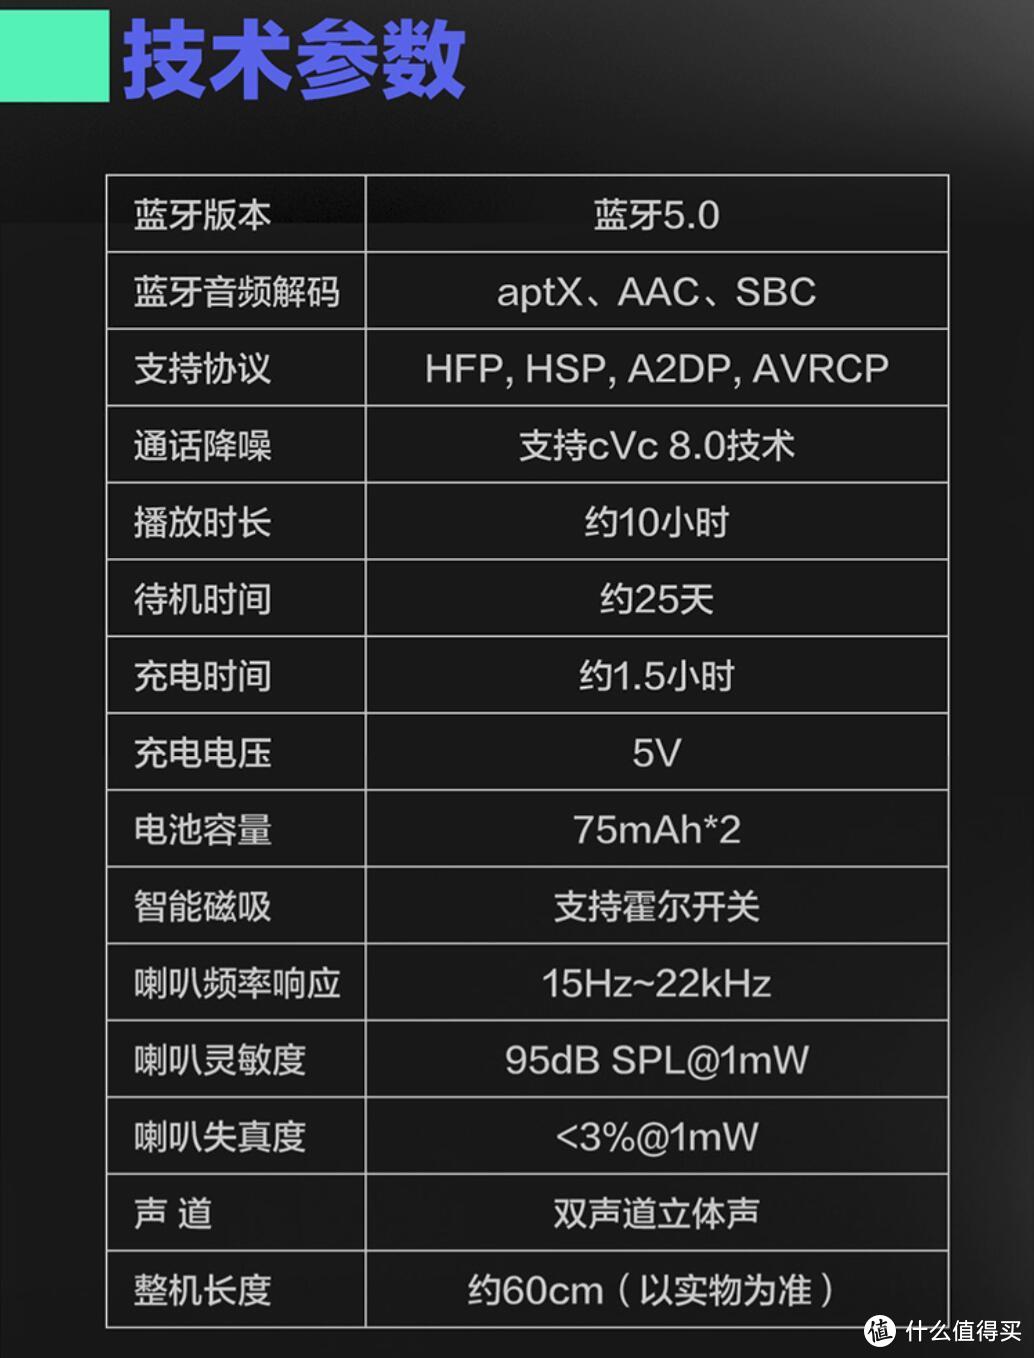 129元即享AptX+IP65：爱奇艺 Verb 无线耳机の快速体验